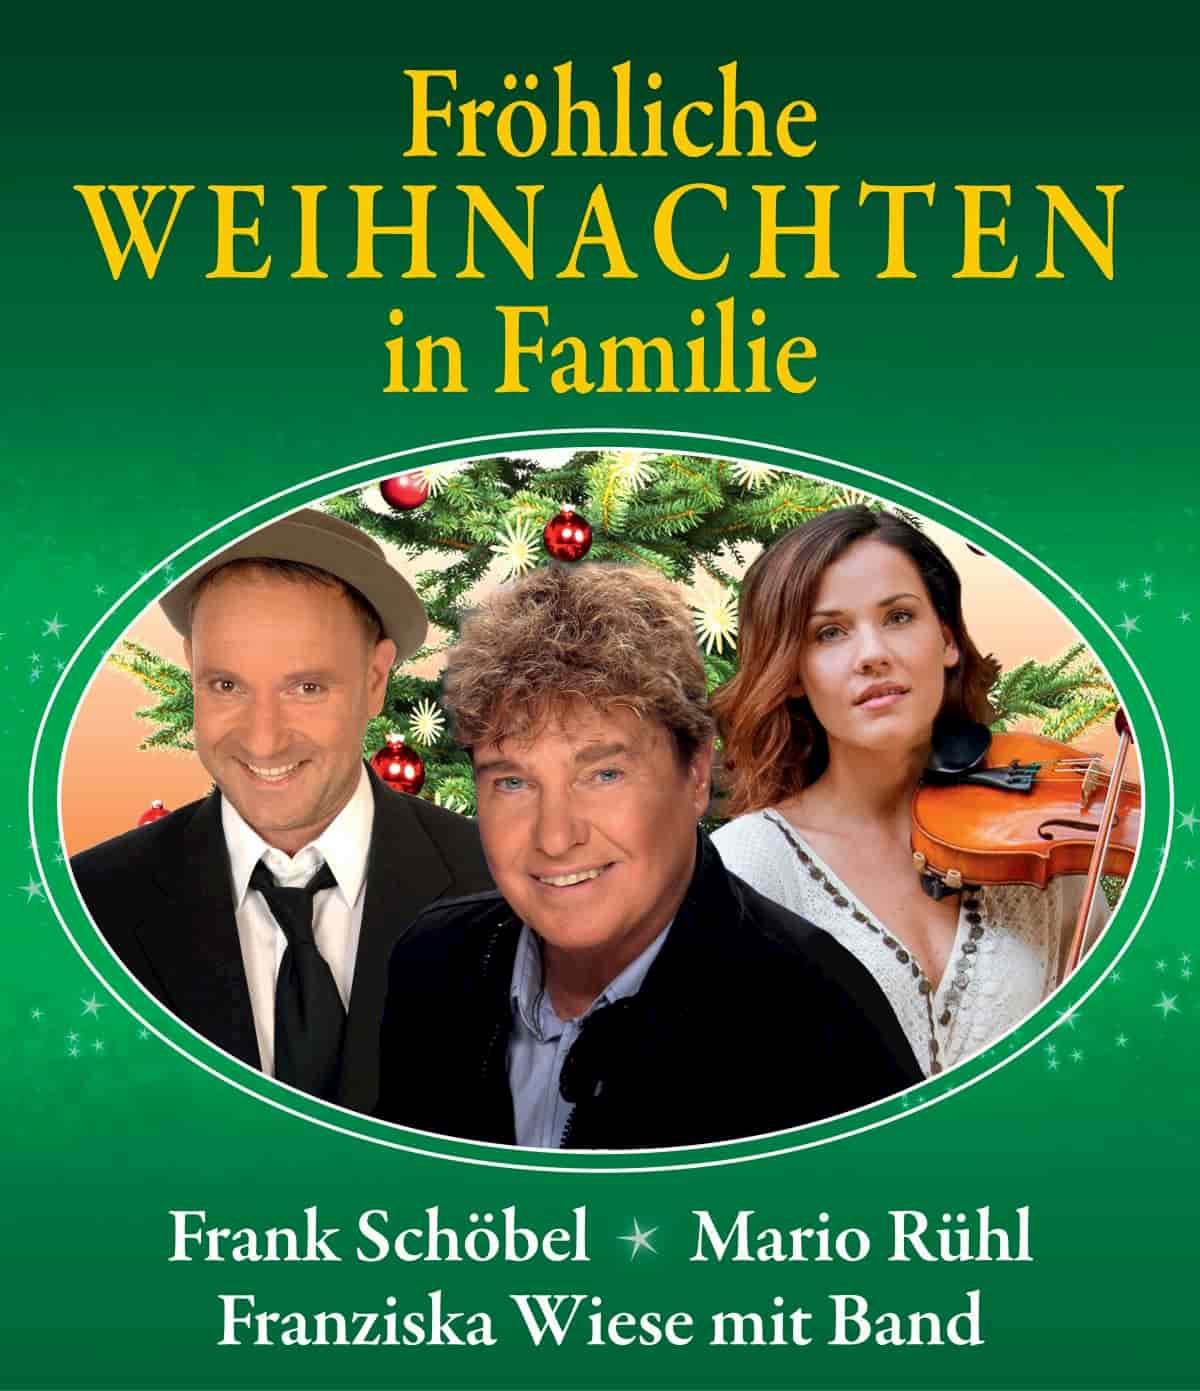 Frank Schöbel Weihnachten in Familie 2019